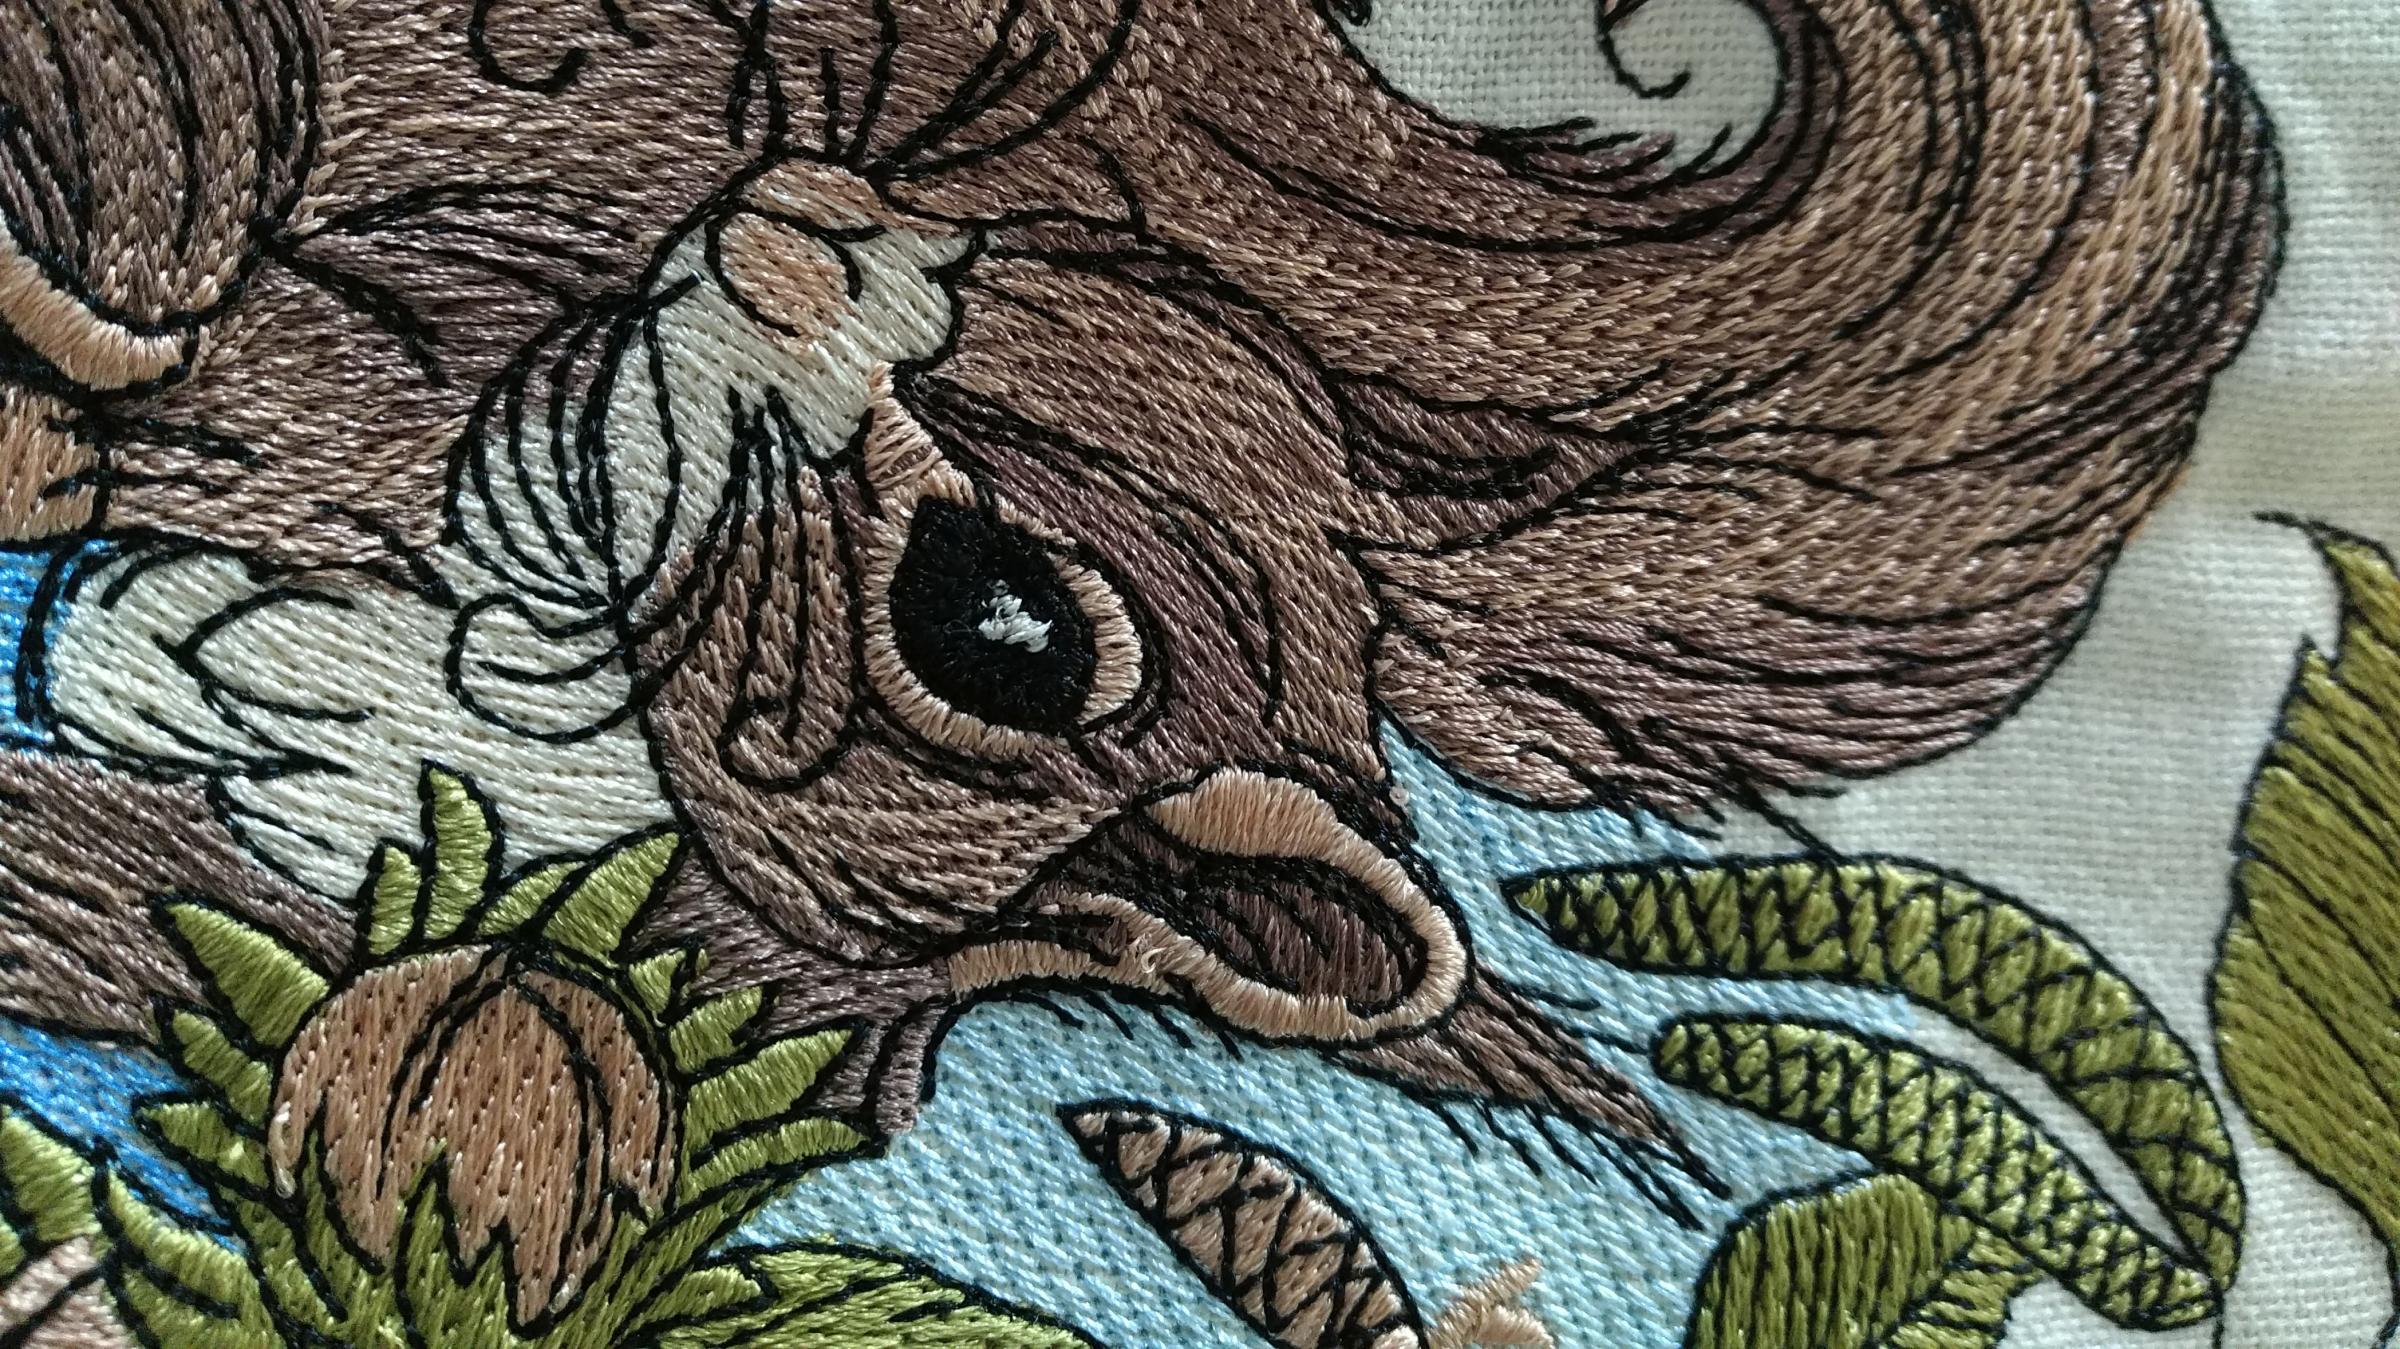 Squirrel machine embroidery design at kitchen napkin